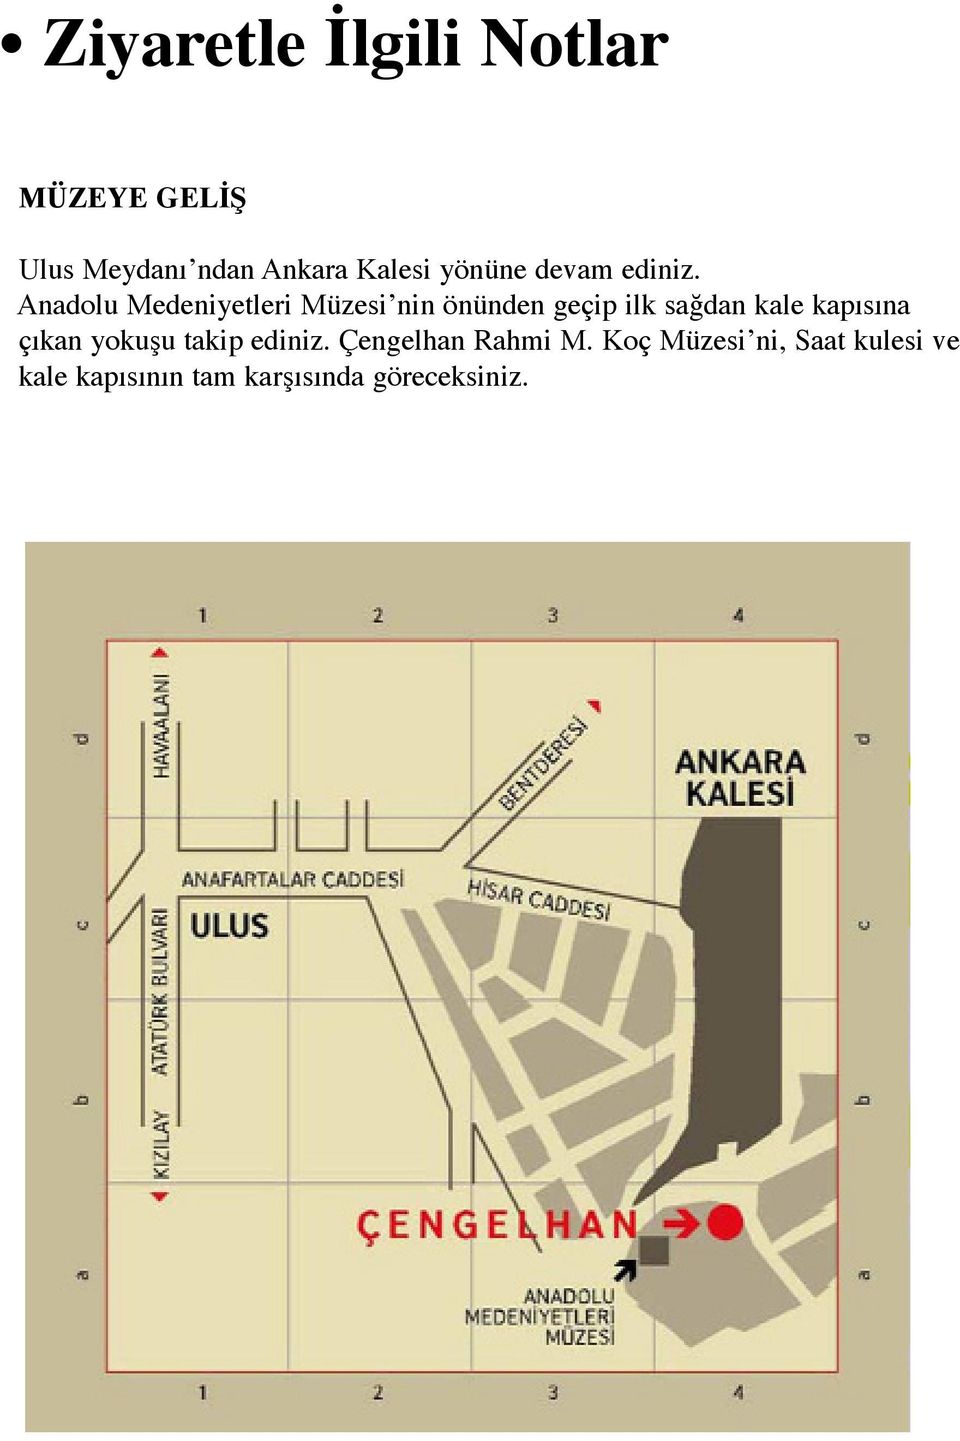 Anadolu Medeniyetleri Müzesi nin önünden geçip ilk sağdan kale